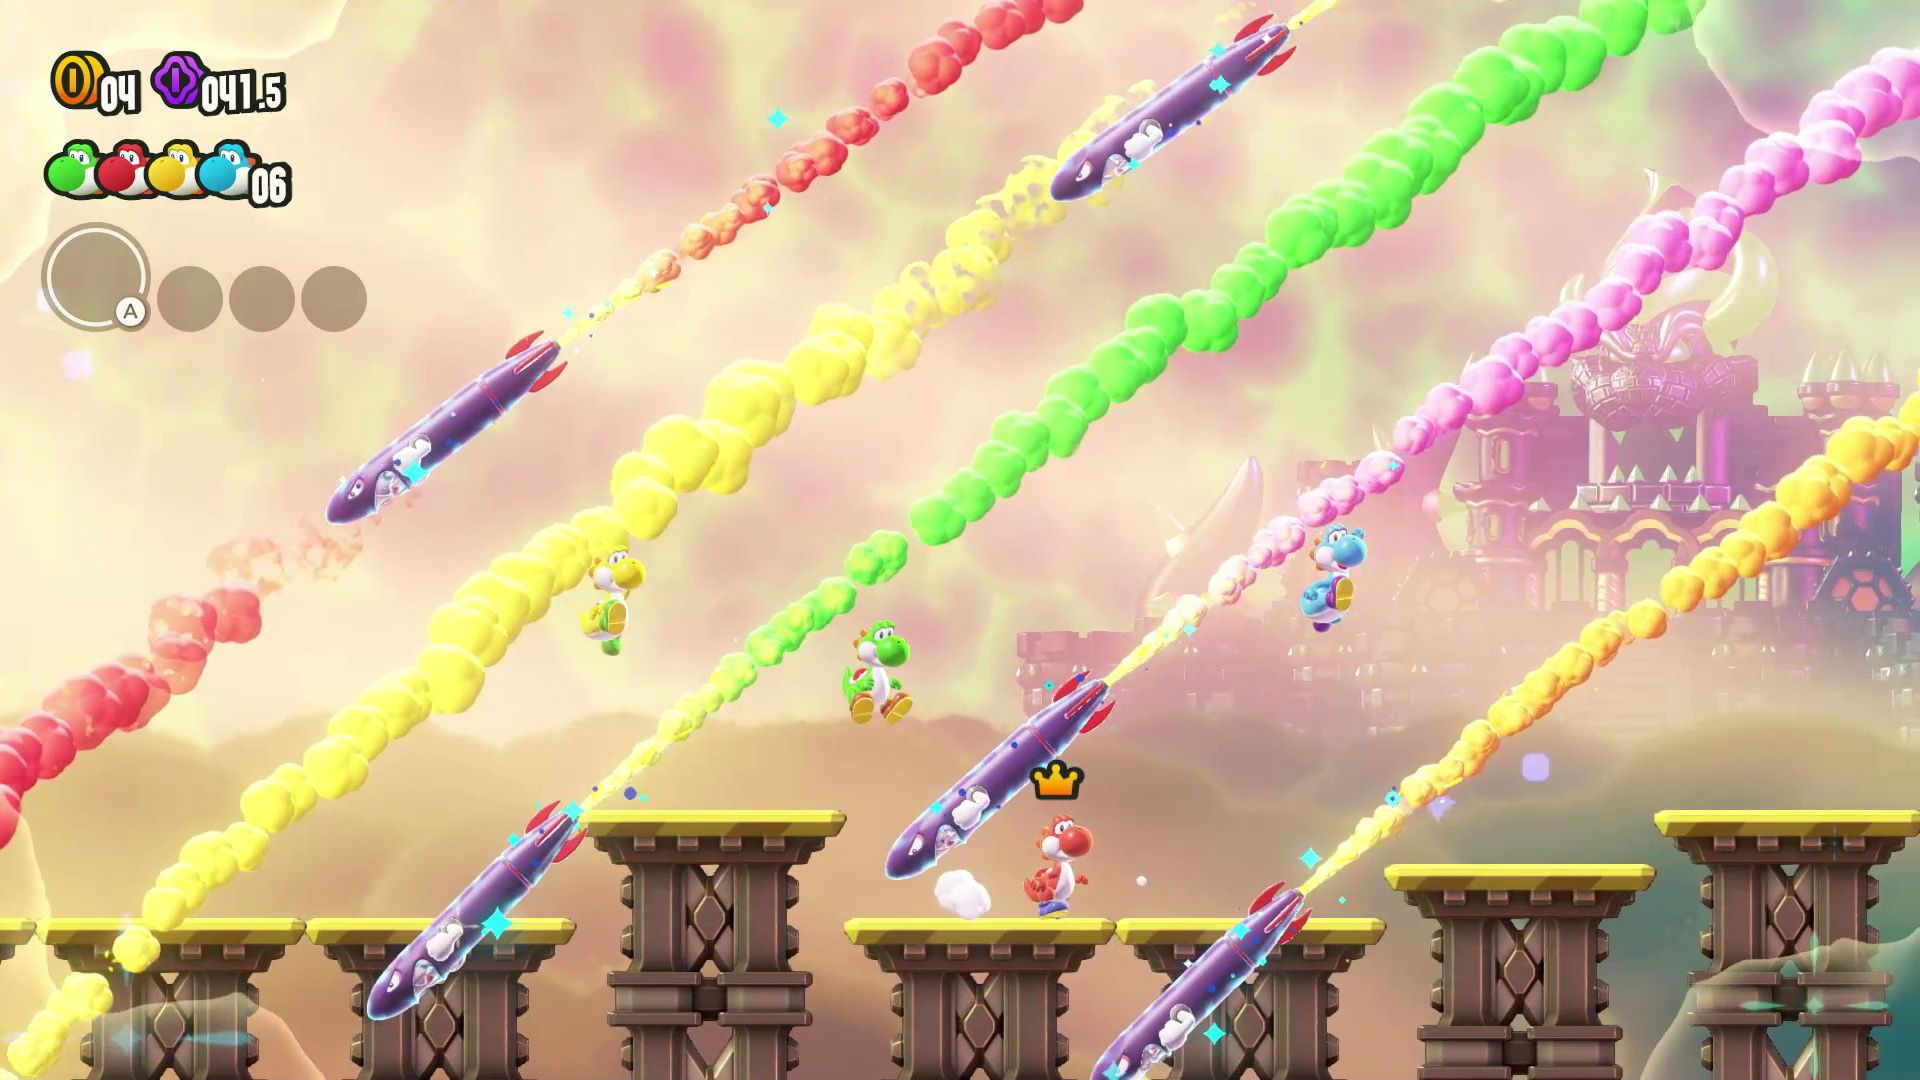  Группа Йоши, убегающих от ракет в Super Mario Bros Wonder